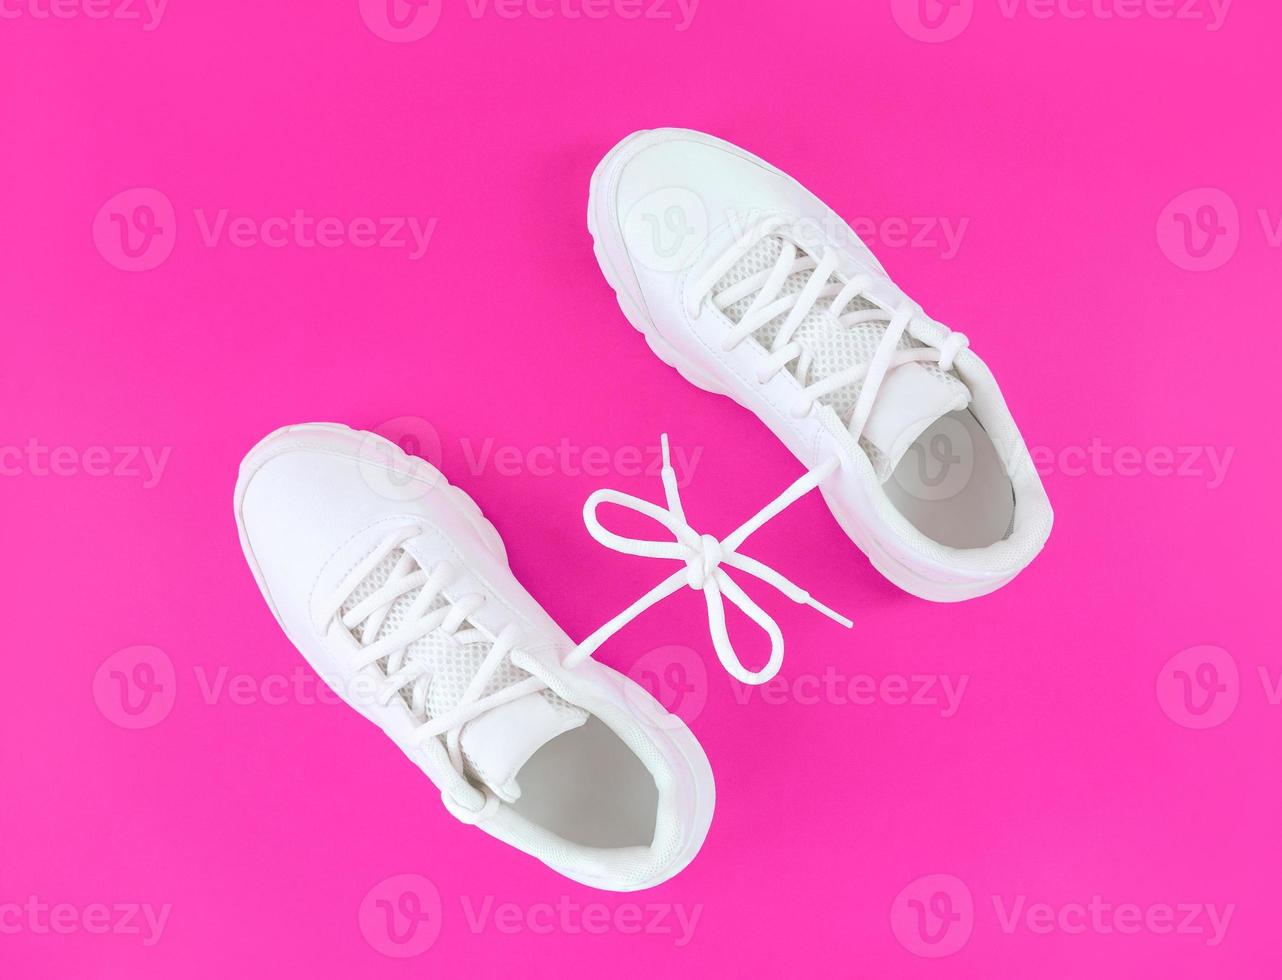 Par de zapatos deportivos blancos conectados con lazo de cordones sobre fondo rosa foto